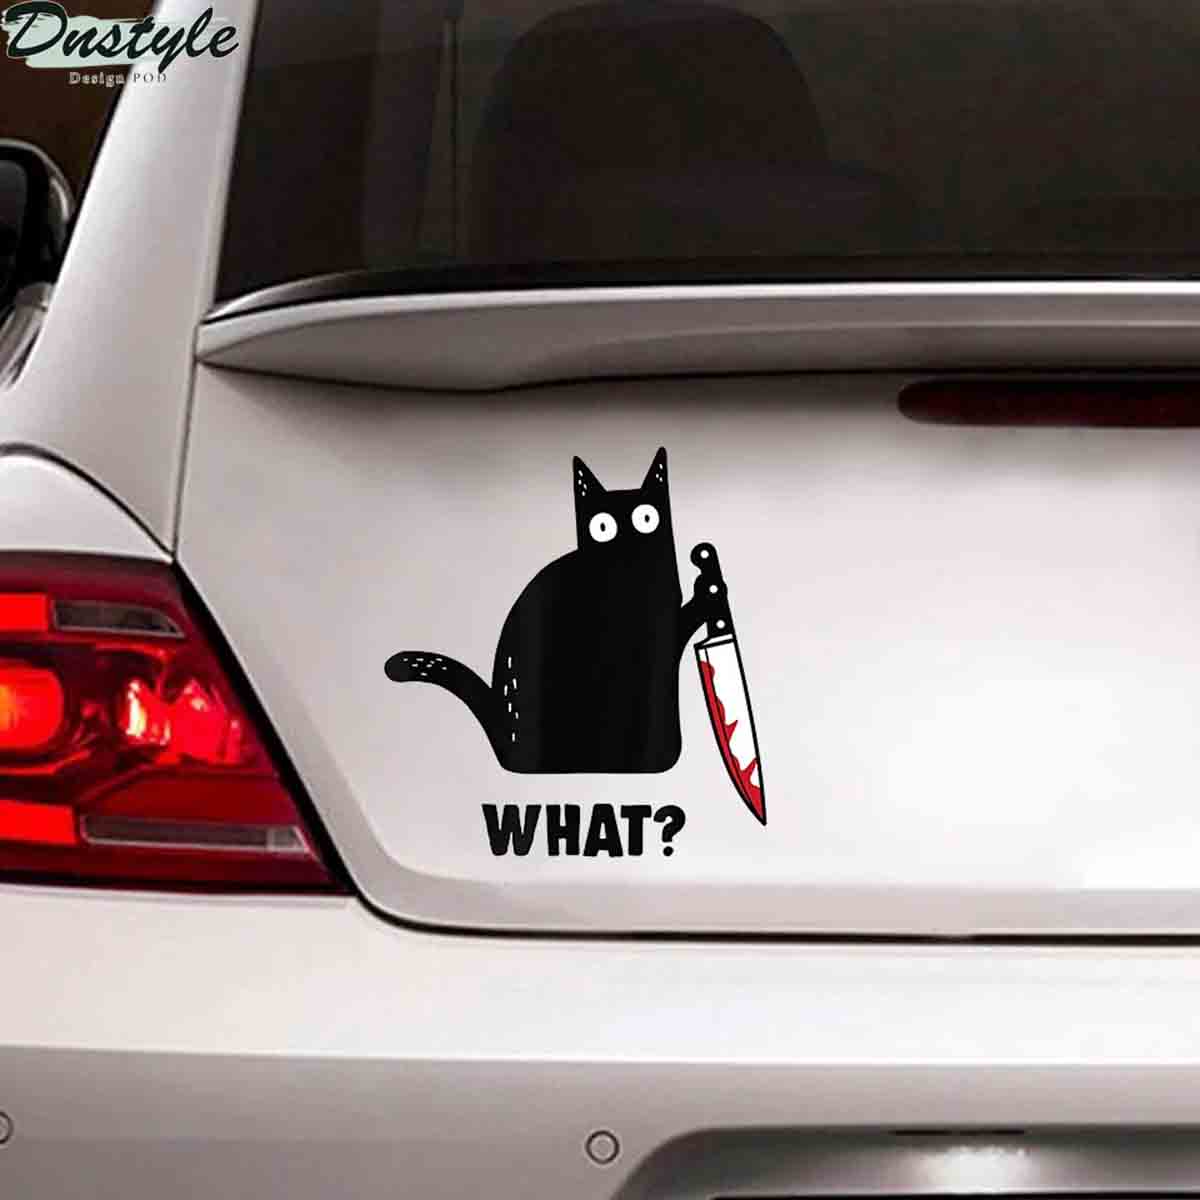 Black cat knife murder car decal sticker 1